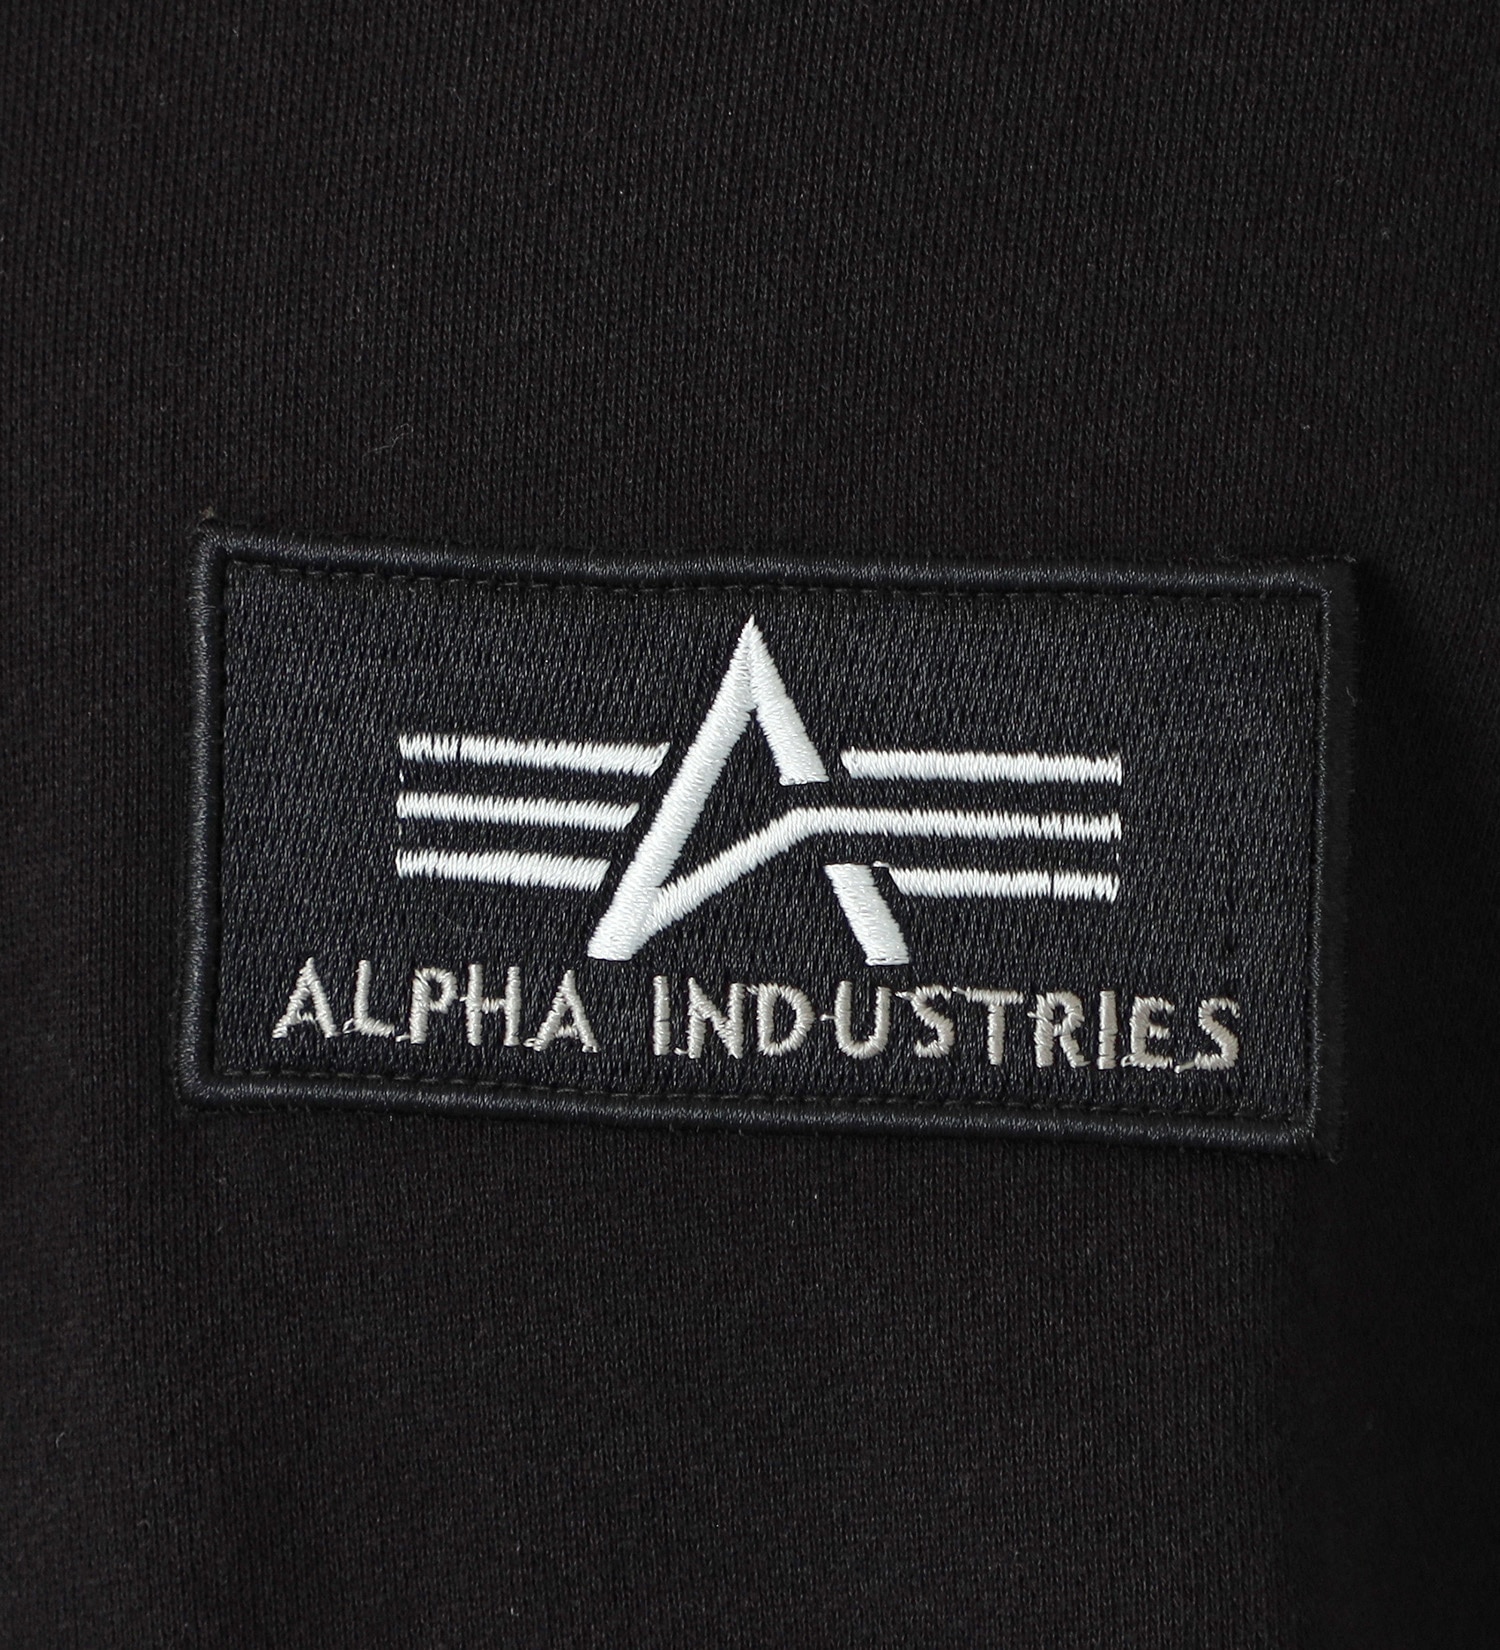 ALPHA(アルファ)のパッチドスウェットパーカー|トップス/スウェット/メンズ|ブラック